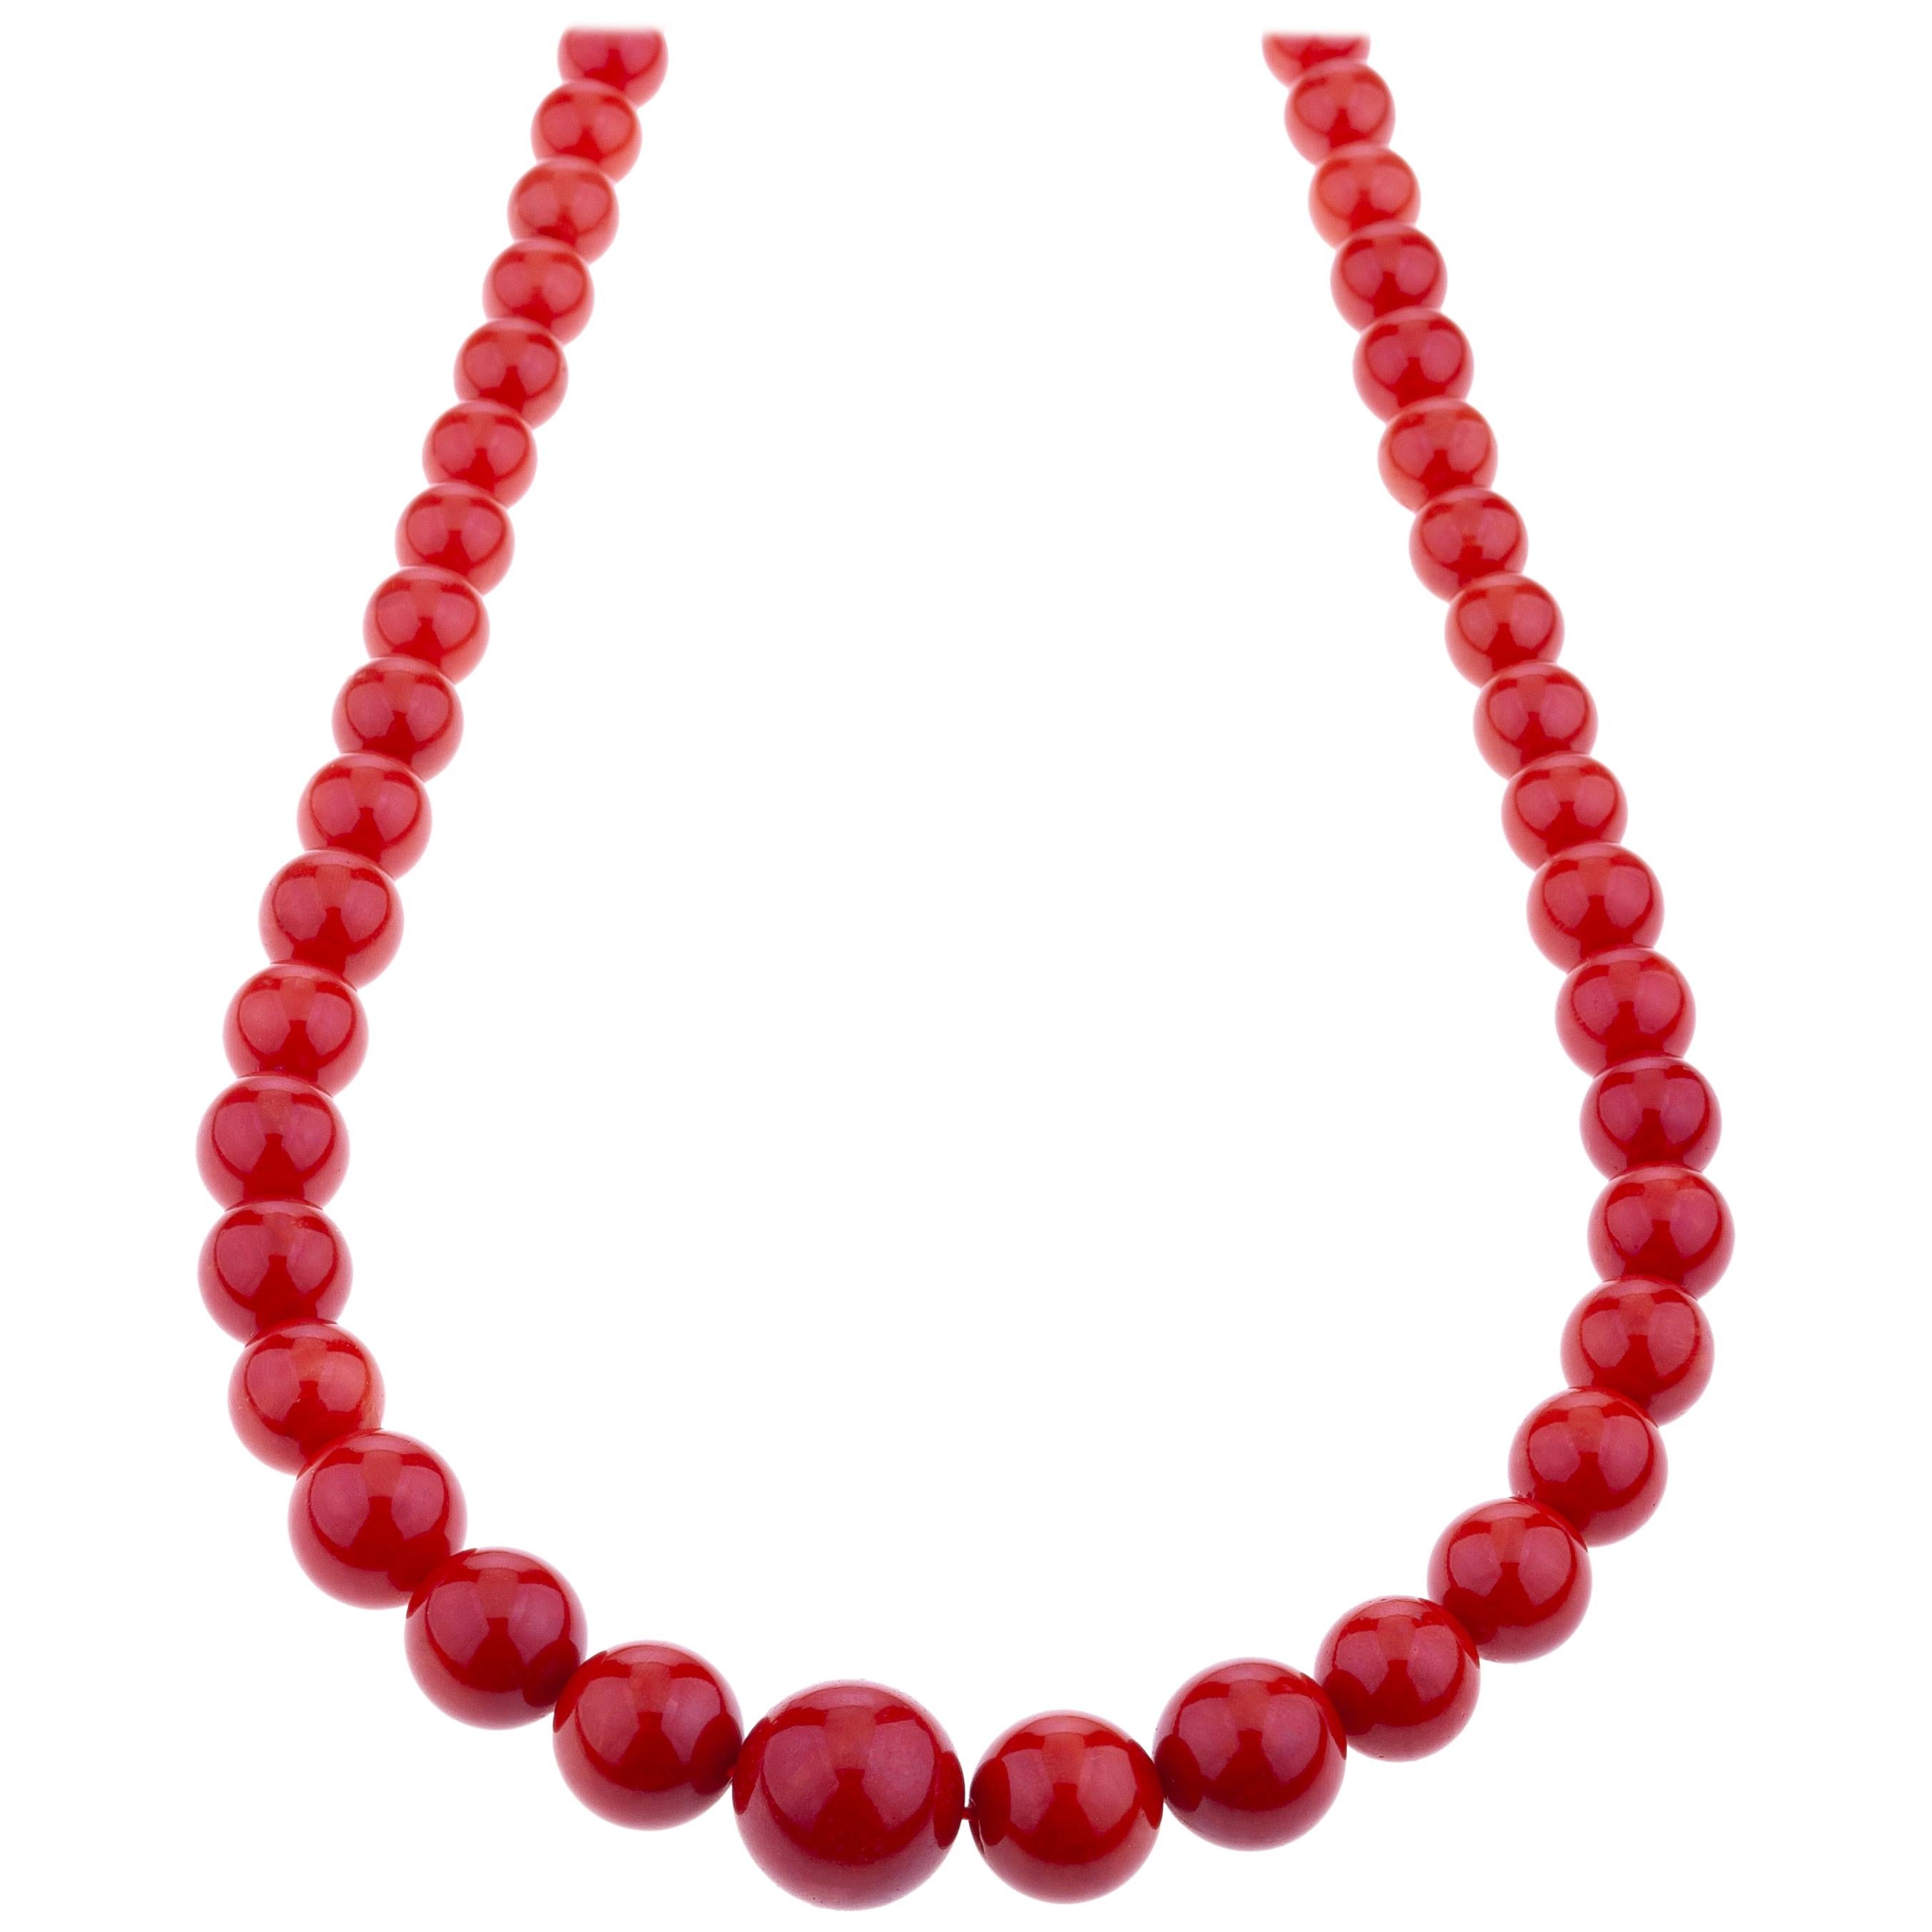 Long collier de perles de corail rouge de Sardaigne en or 18 carats avec fermoir